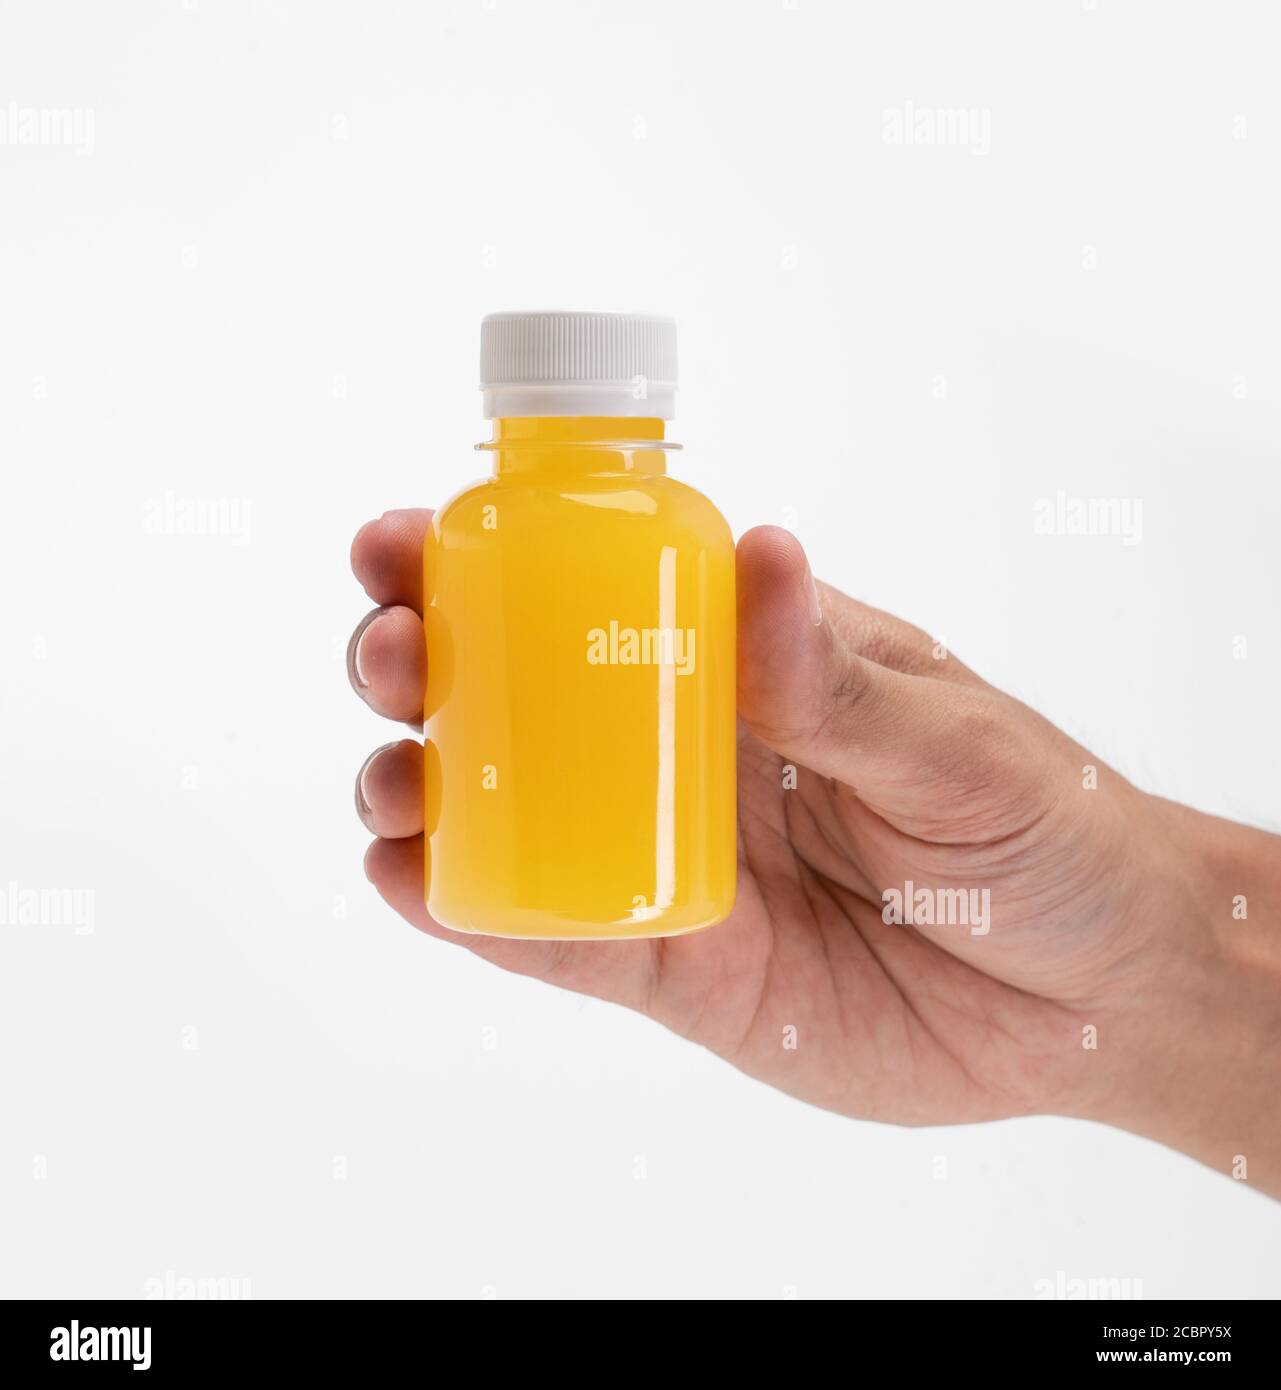 46,839 Orange Juice Jar Images, Stock Photos, 3D objects